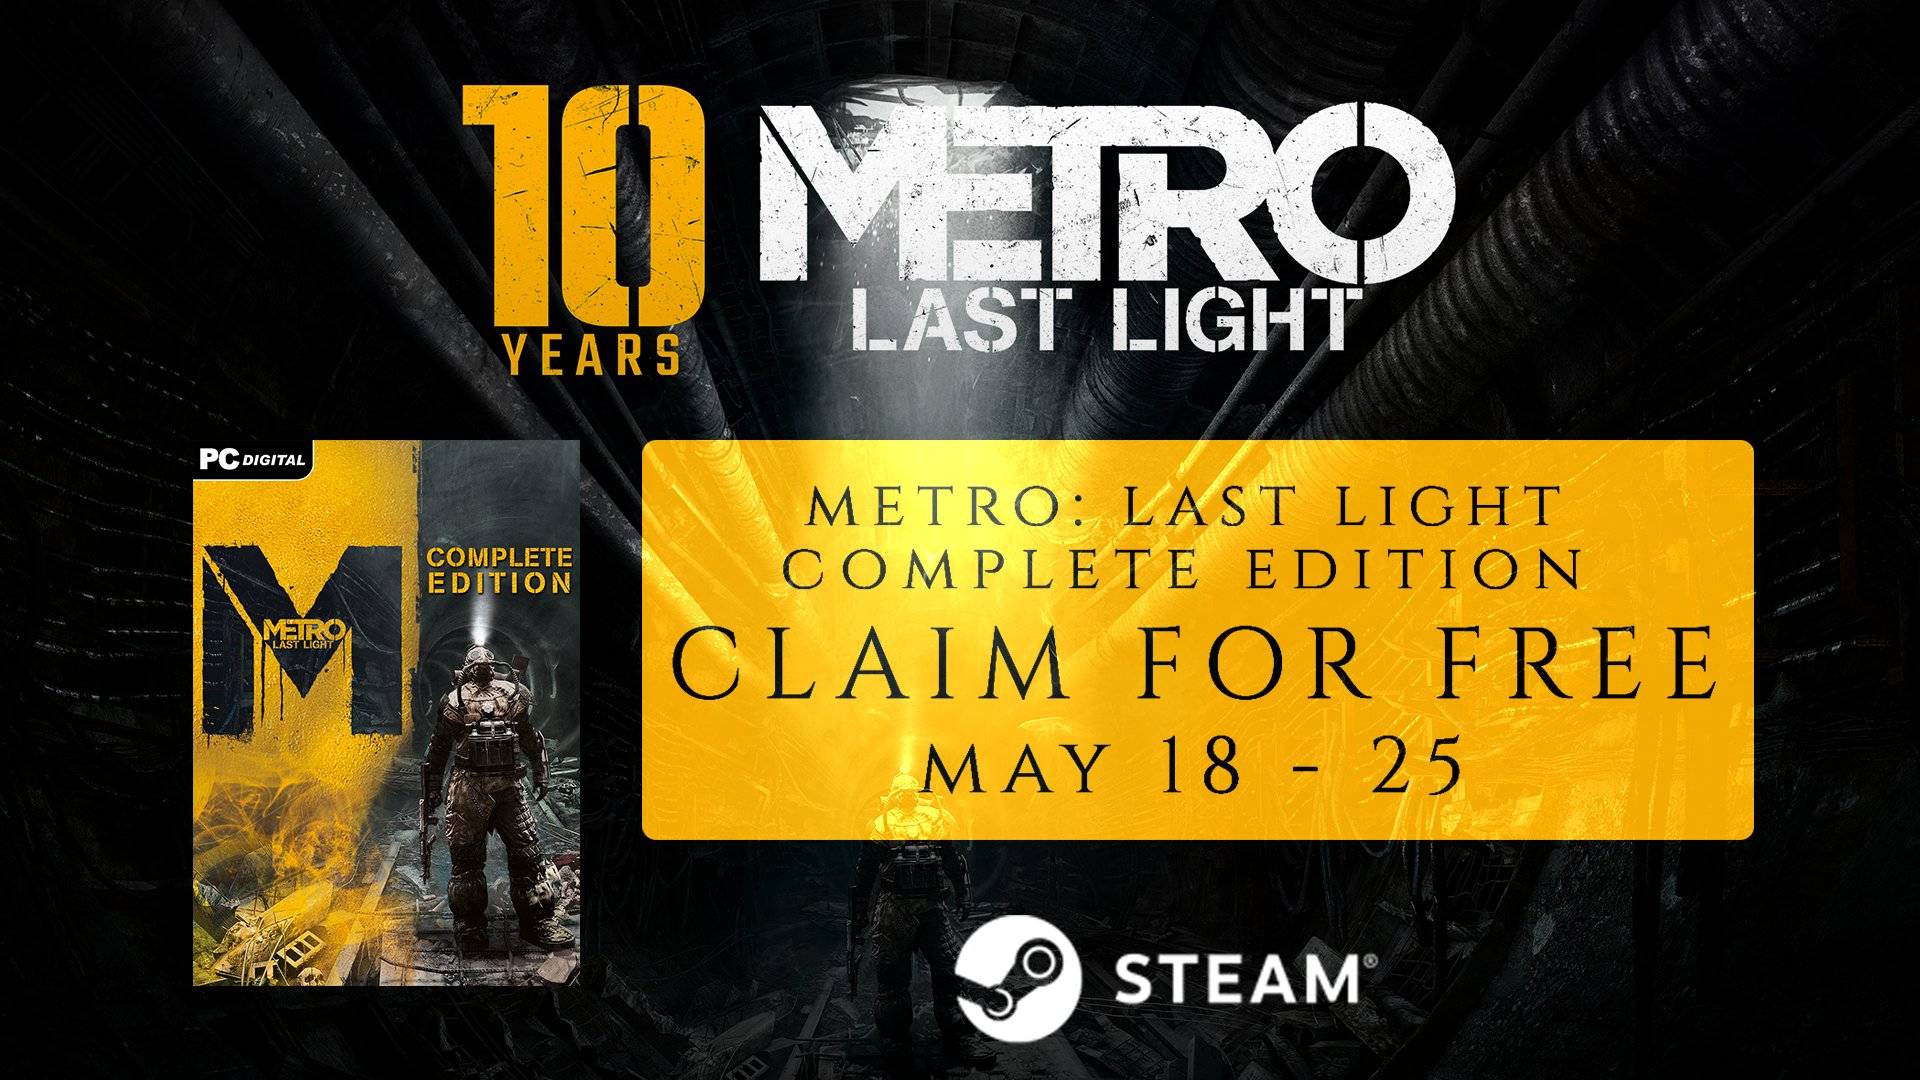 白嫖的，哪次不拿？Steam《METRO: LAST LIGHT》限时免费领取，领后永久入库！